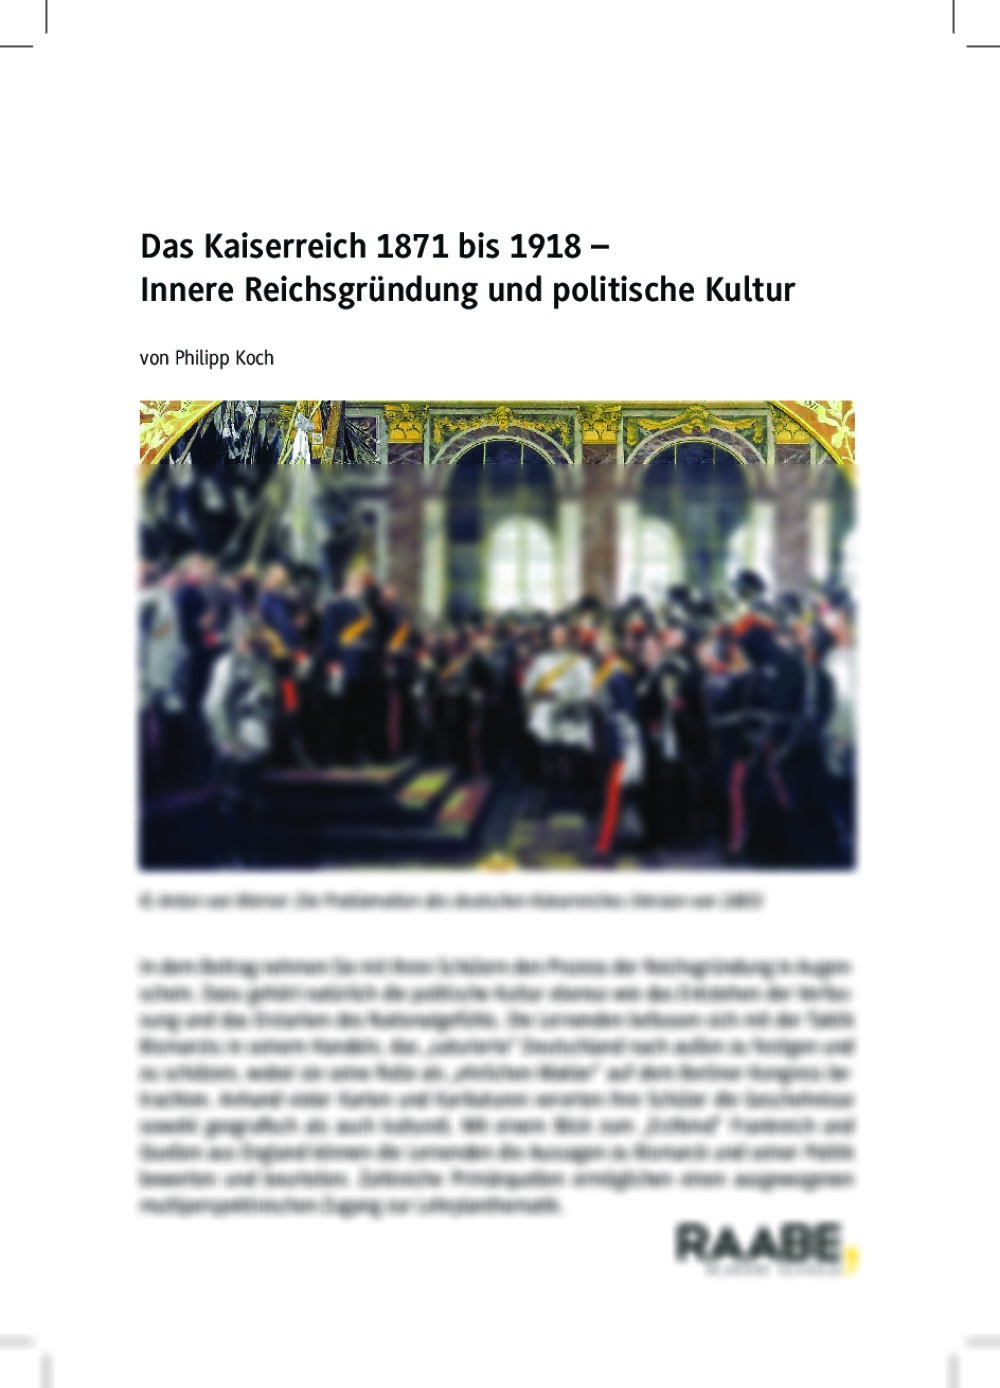 Das Kaiserreich 1871 bis 1918 - Seite 1